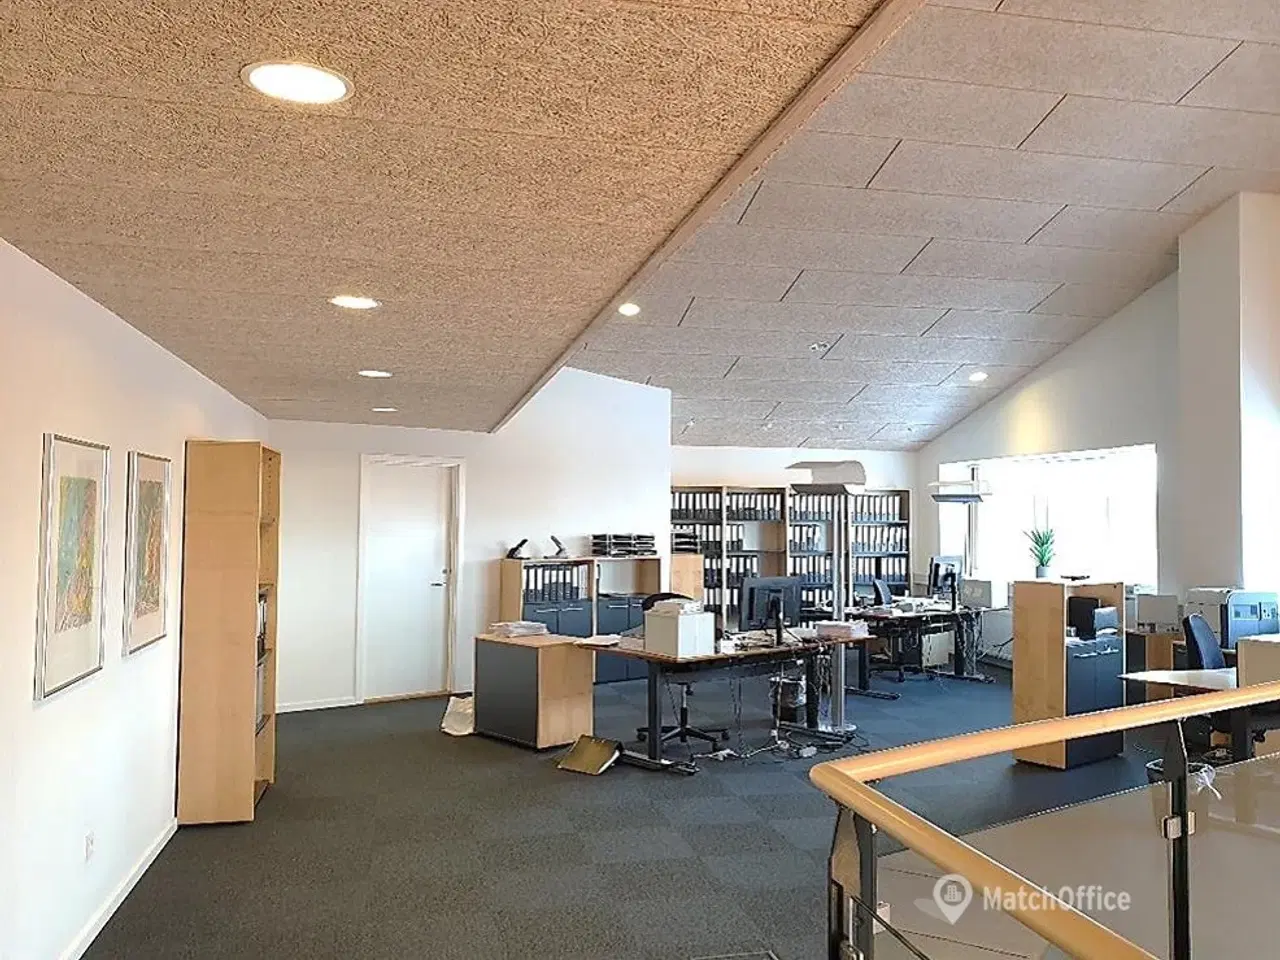 Billede 17 - Nyrenoverede kontorlokaler og logistik-/produktionshaller med god loftshøjde